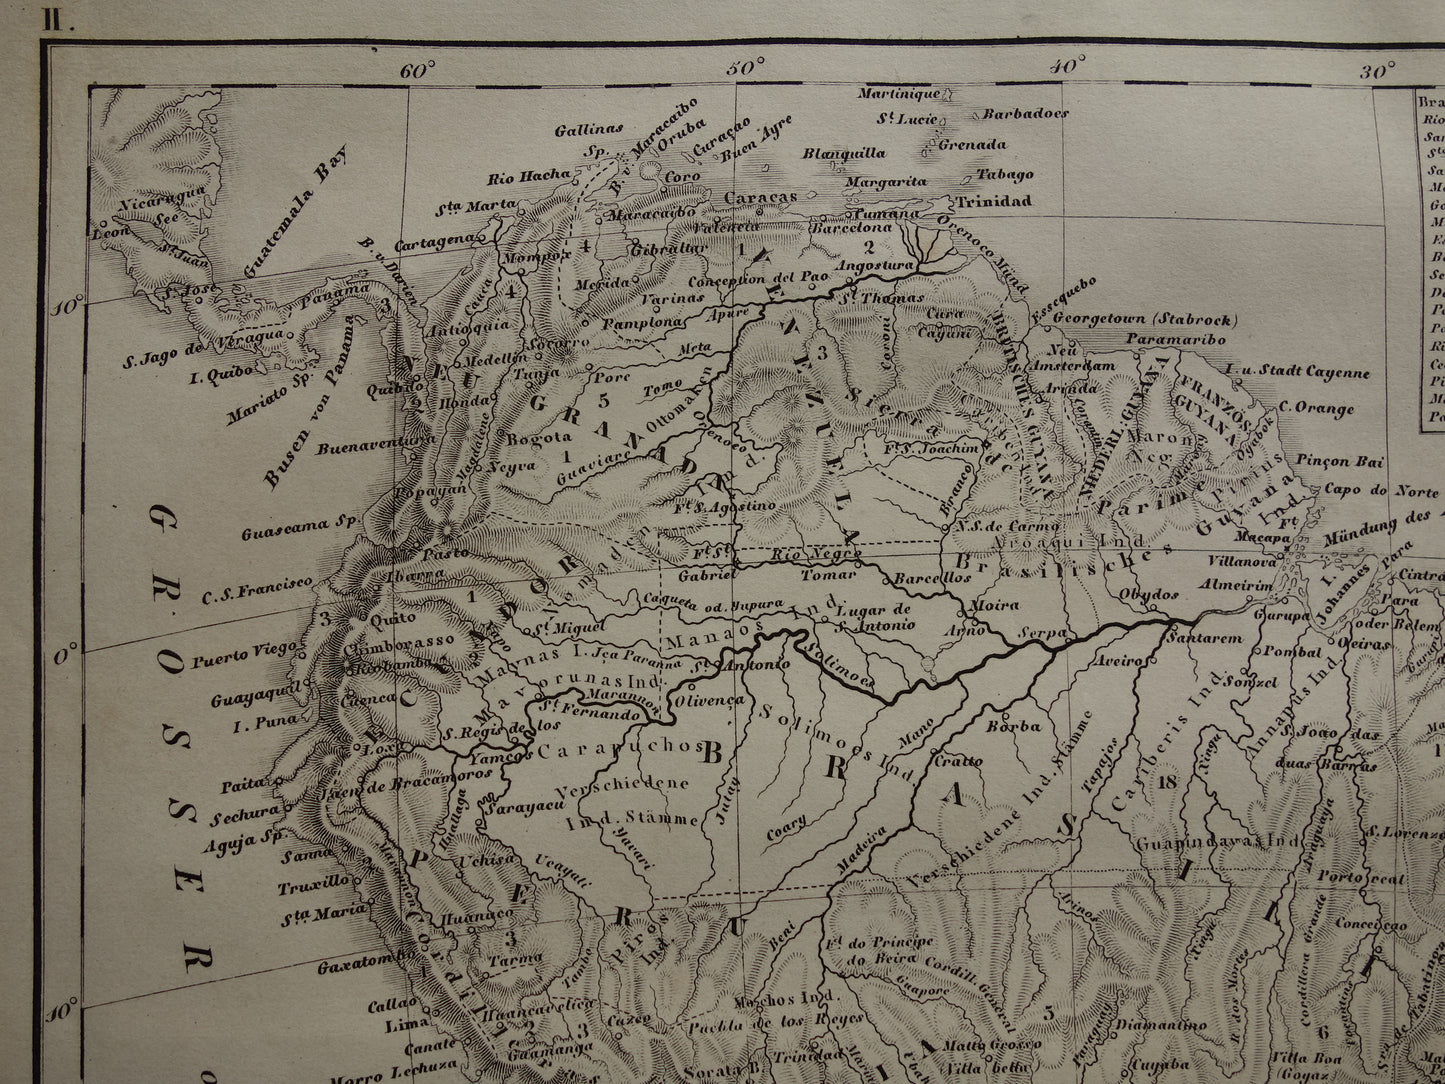 ZUID AMERIKA antieke kaart 170+ jaar oude landkaart van continent uit 1849 - originele vintage historische kaarten Brazilië Patagonië Suriname